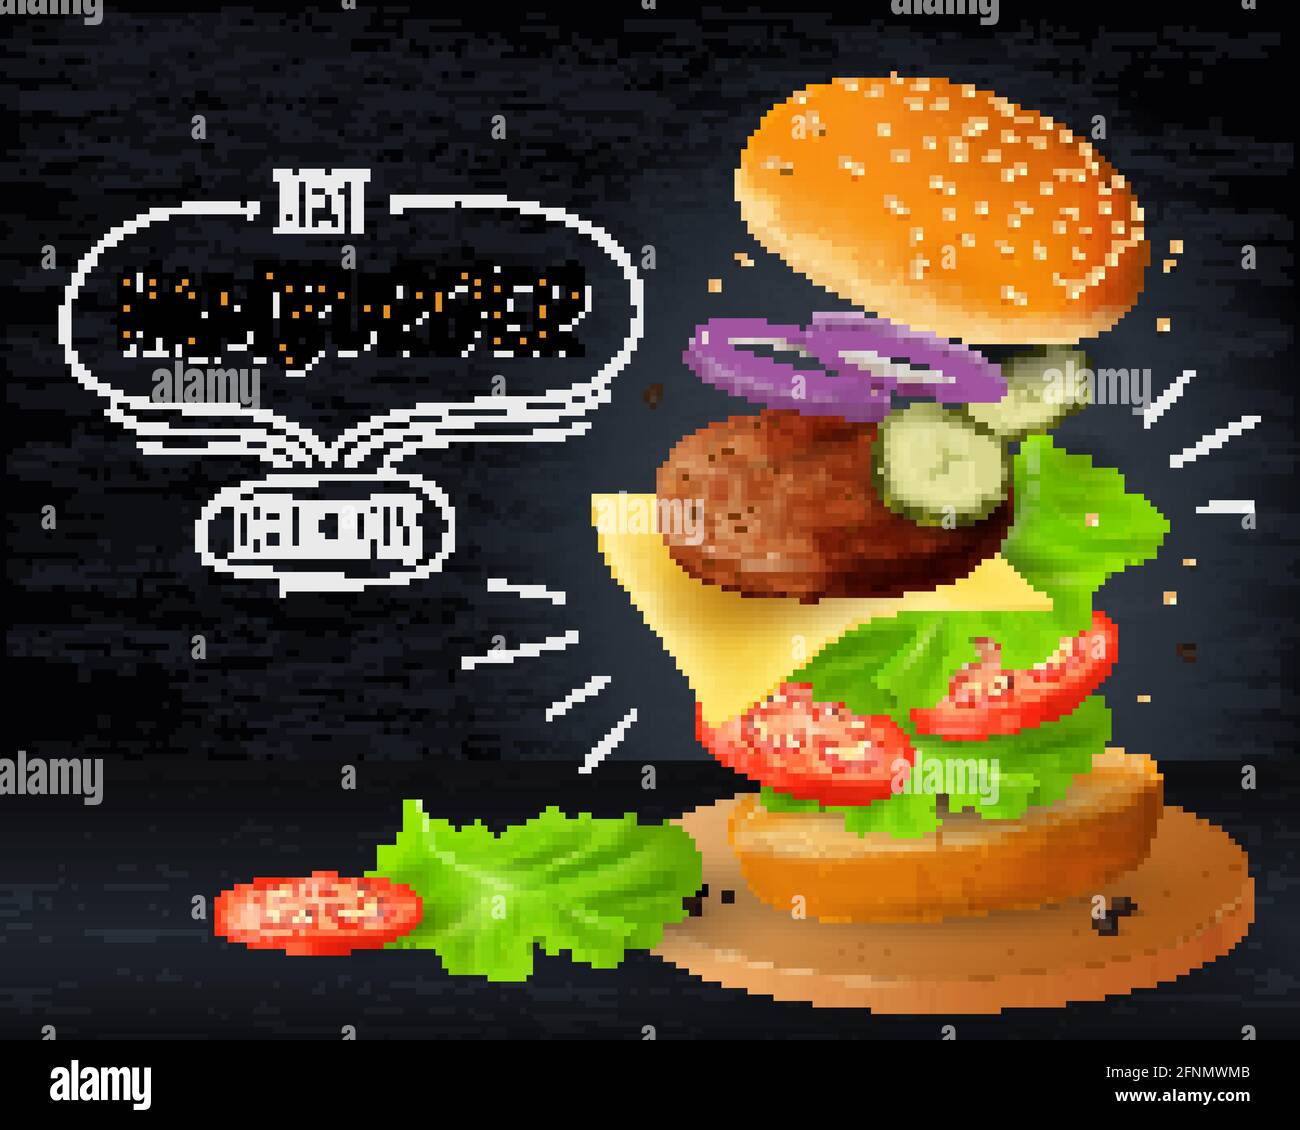 Große Hamburger-Werbung auf Holztafel Hintergrund, realistische Vektor-Illustration Stock Vektor